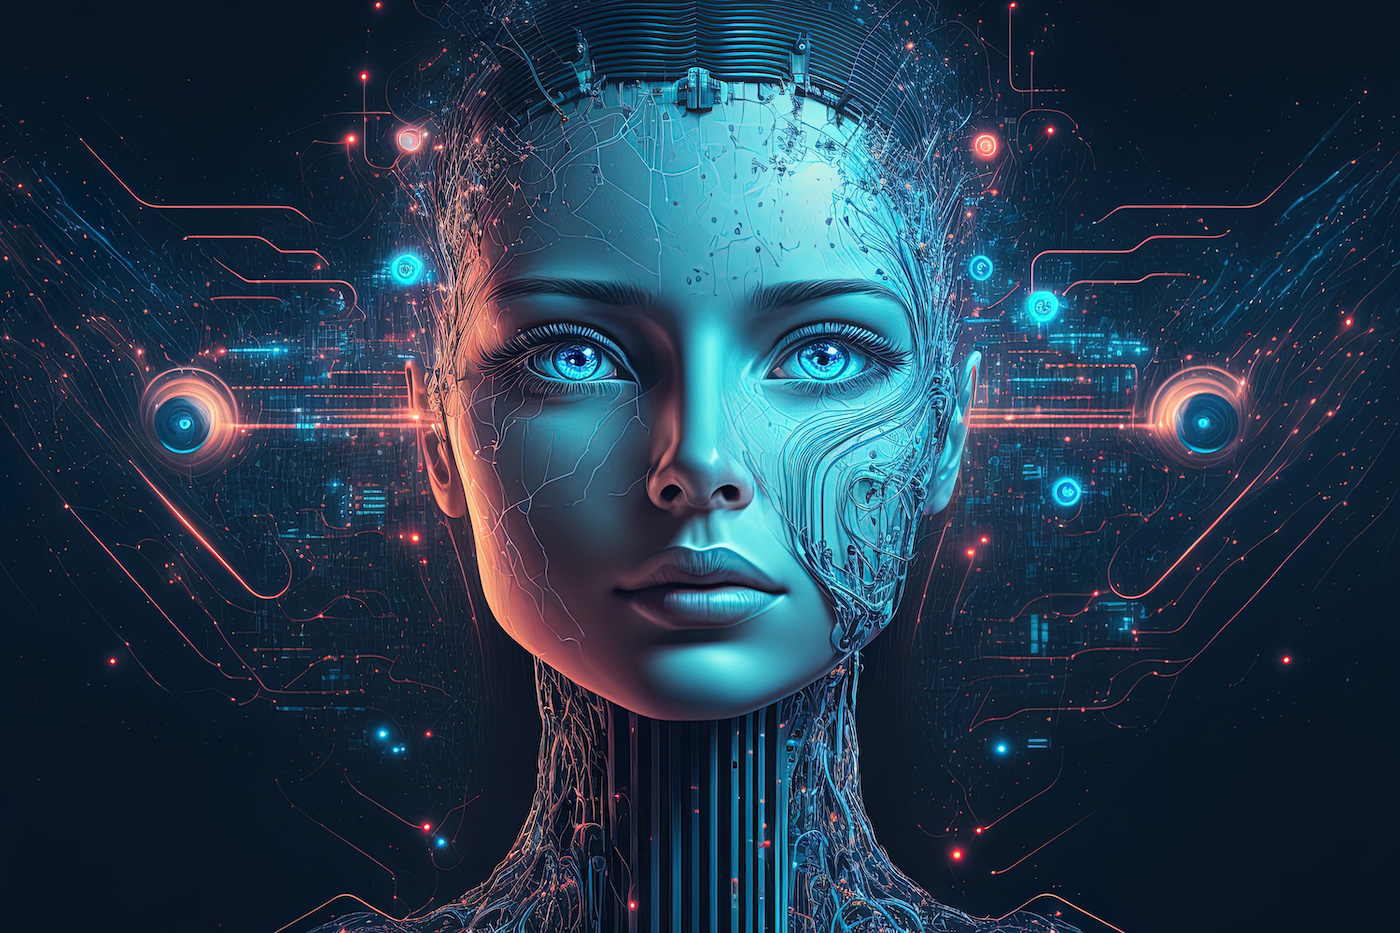 这是一张描绘半人脸半机器人头像的图像，展现了高科技与人类特征的融合，充满未来感与科幻色彩。